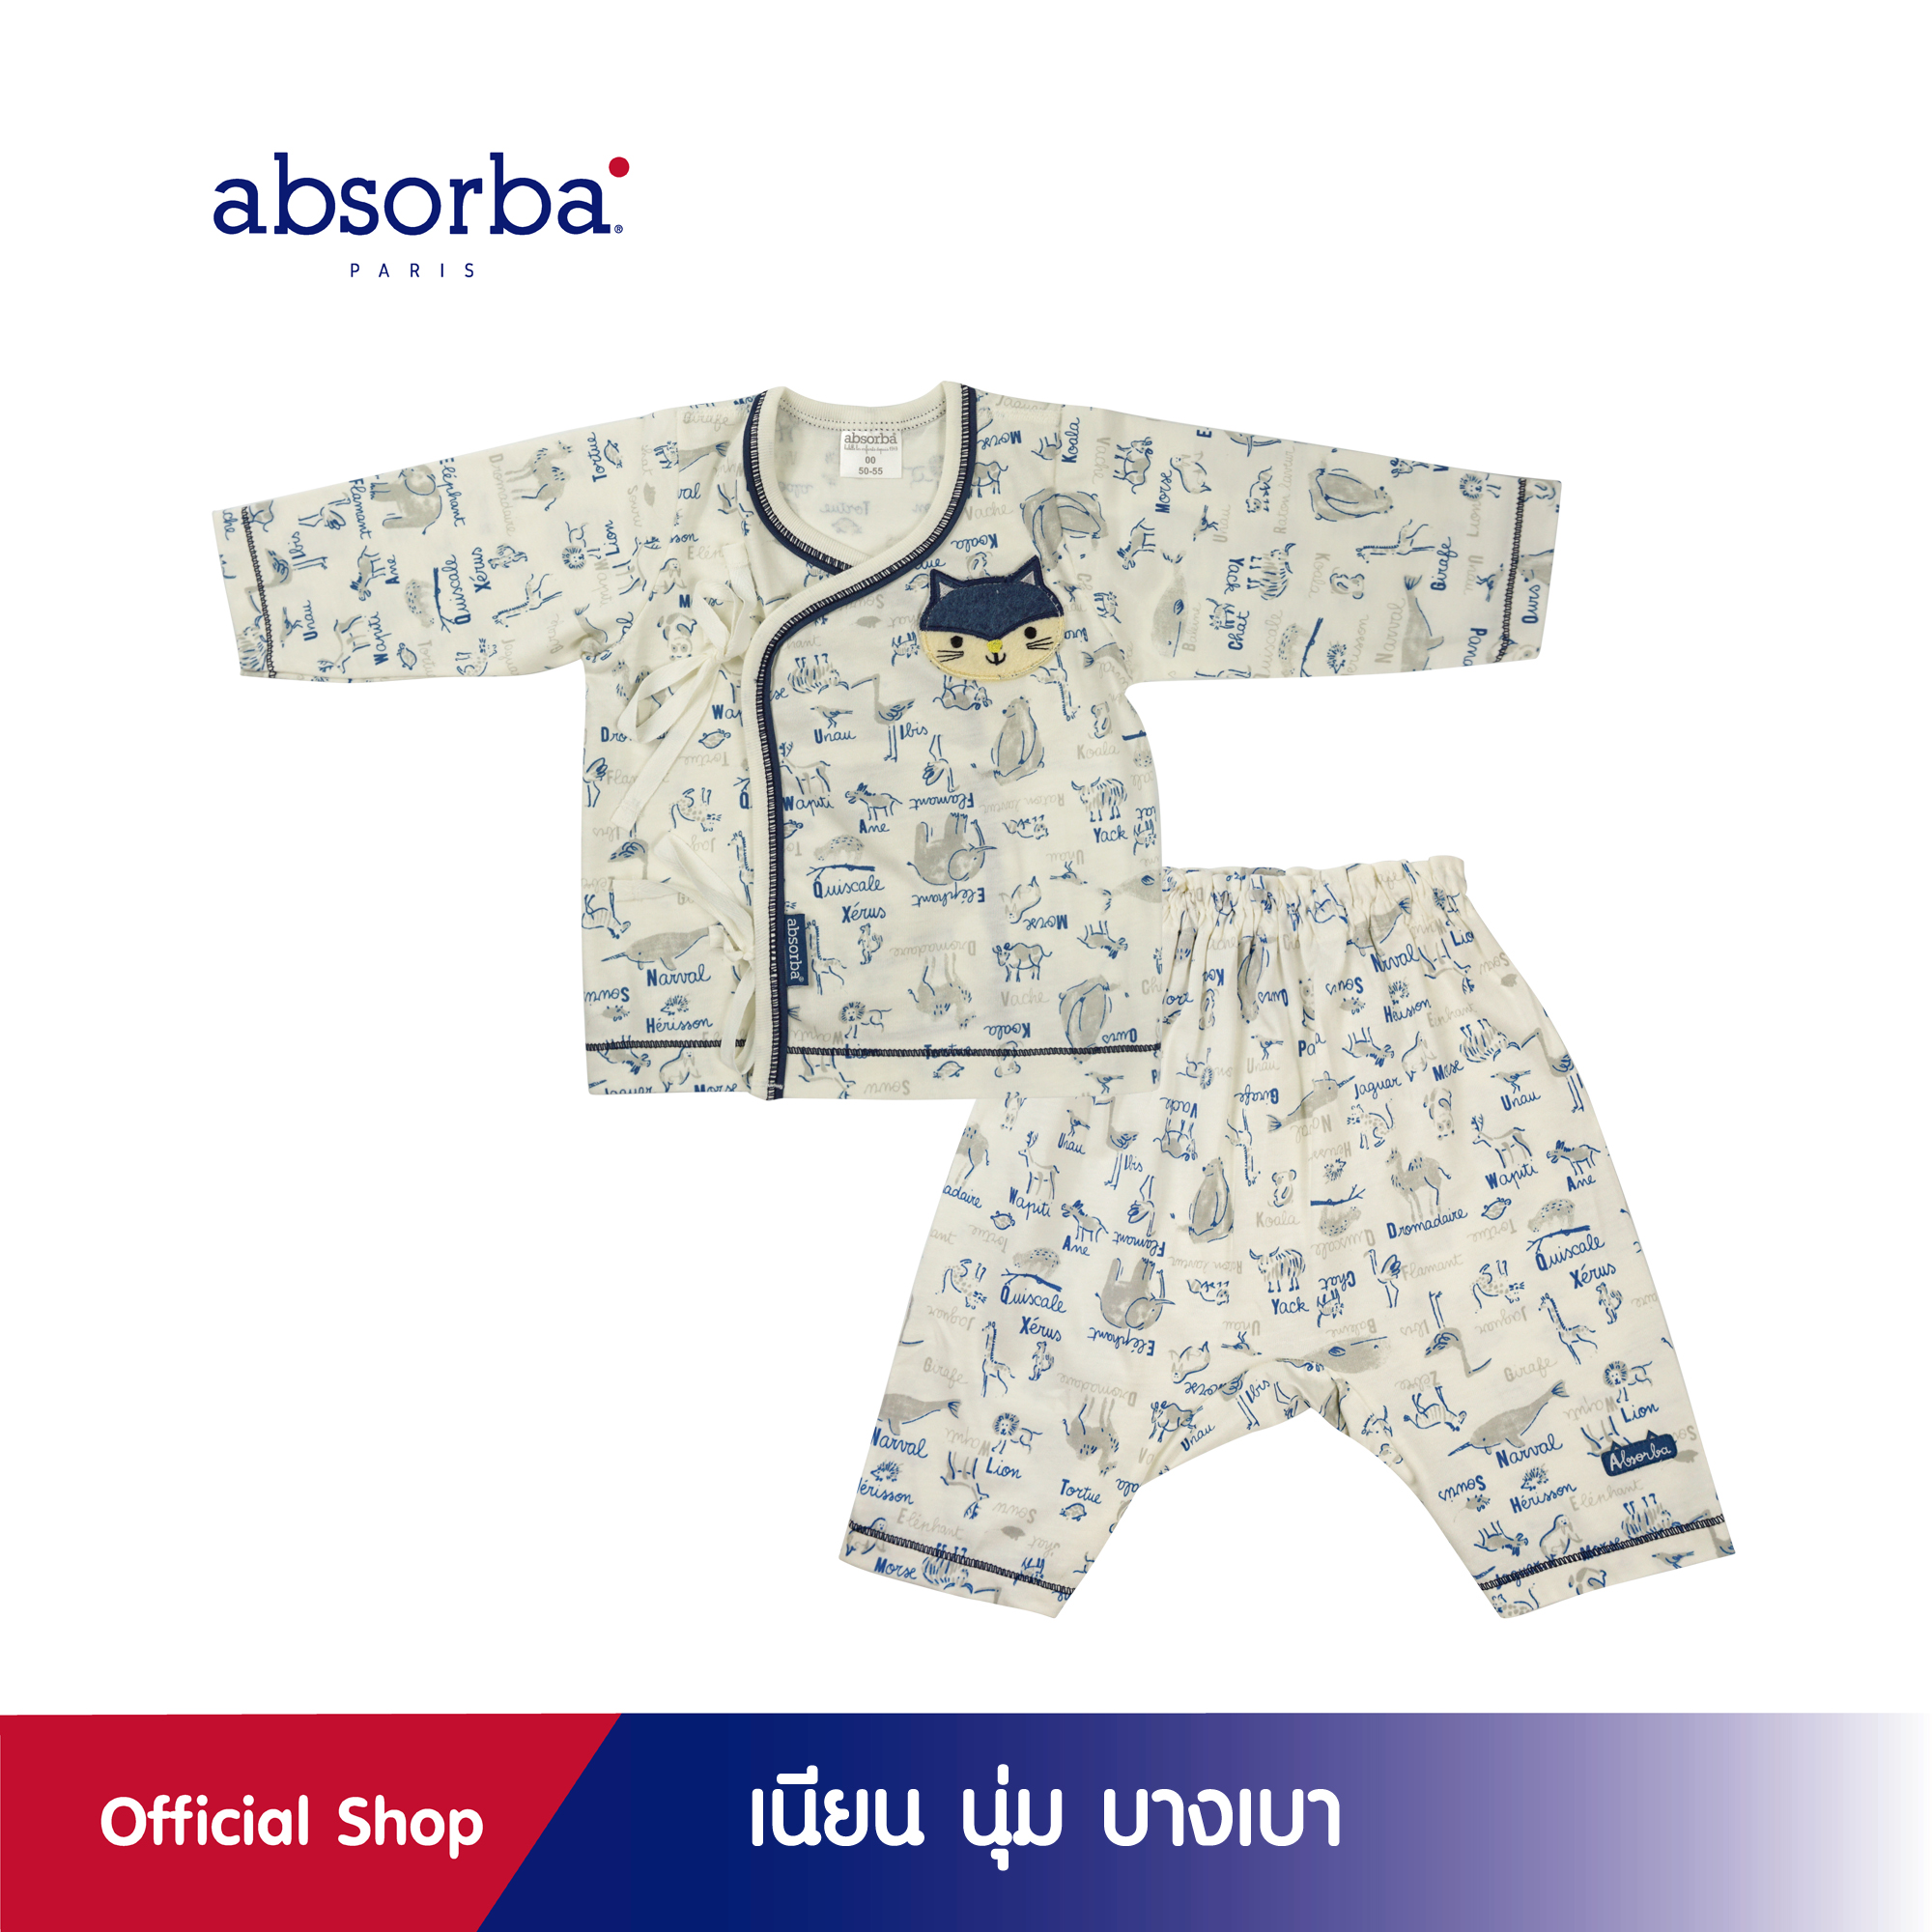 absorba (แอ๊บซอร์บา) ชุดเสื้อป้ายเด็กอ่อน หรือเสื้อผูกหน้าเด็กอ่อน แขนยาว เคลือบคอลลาเจน ปลอดภัย ช่วยรักษาความชุ่มชื่นให้ผิว สำหรับ 3 ถึง 6 เดือน - R1A5108BU ชุดเด็กผู้ชาย